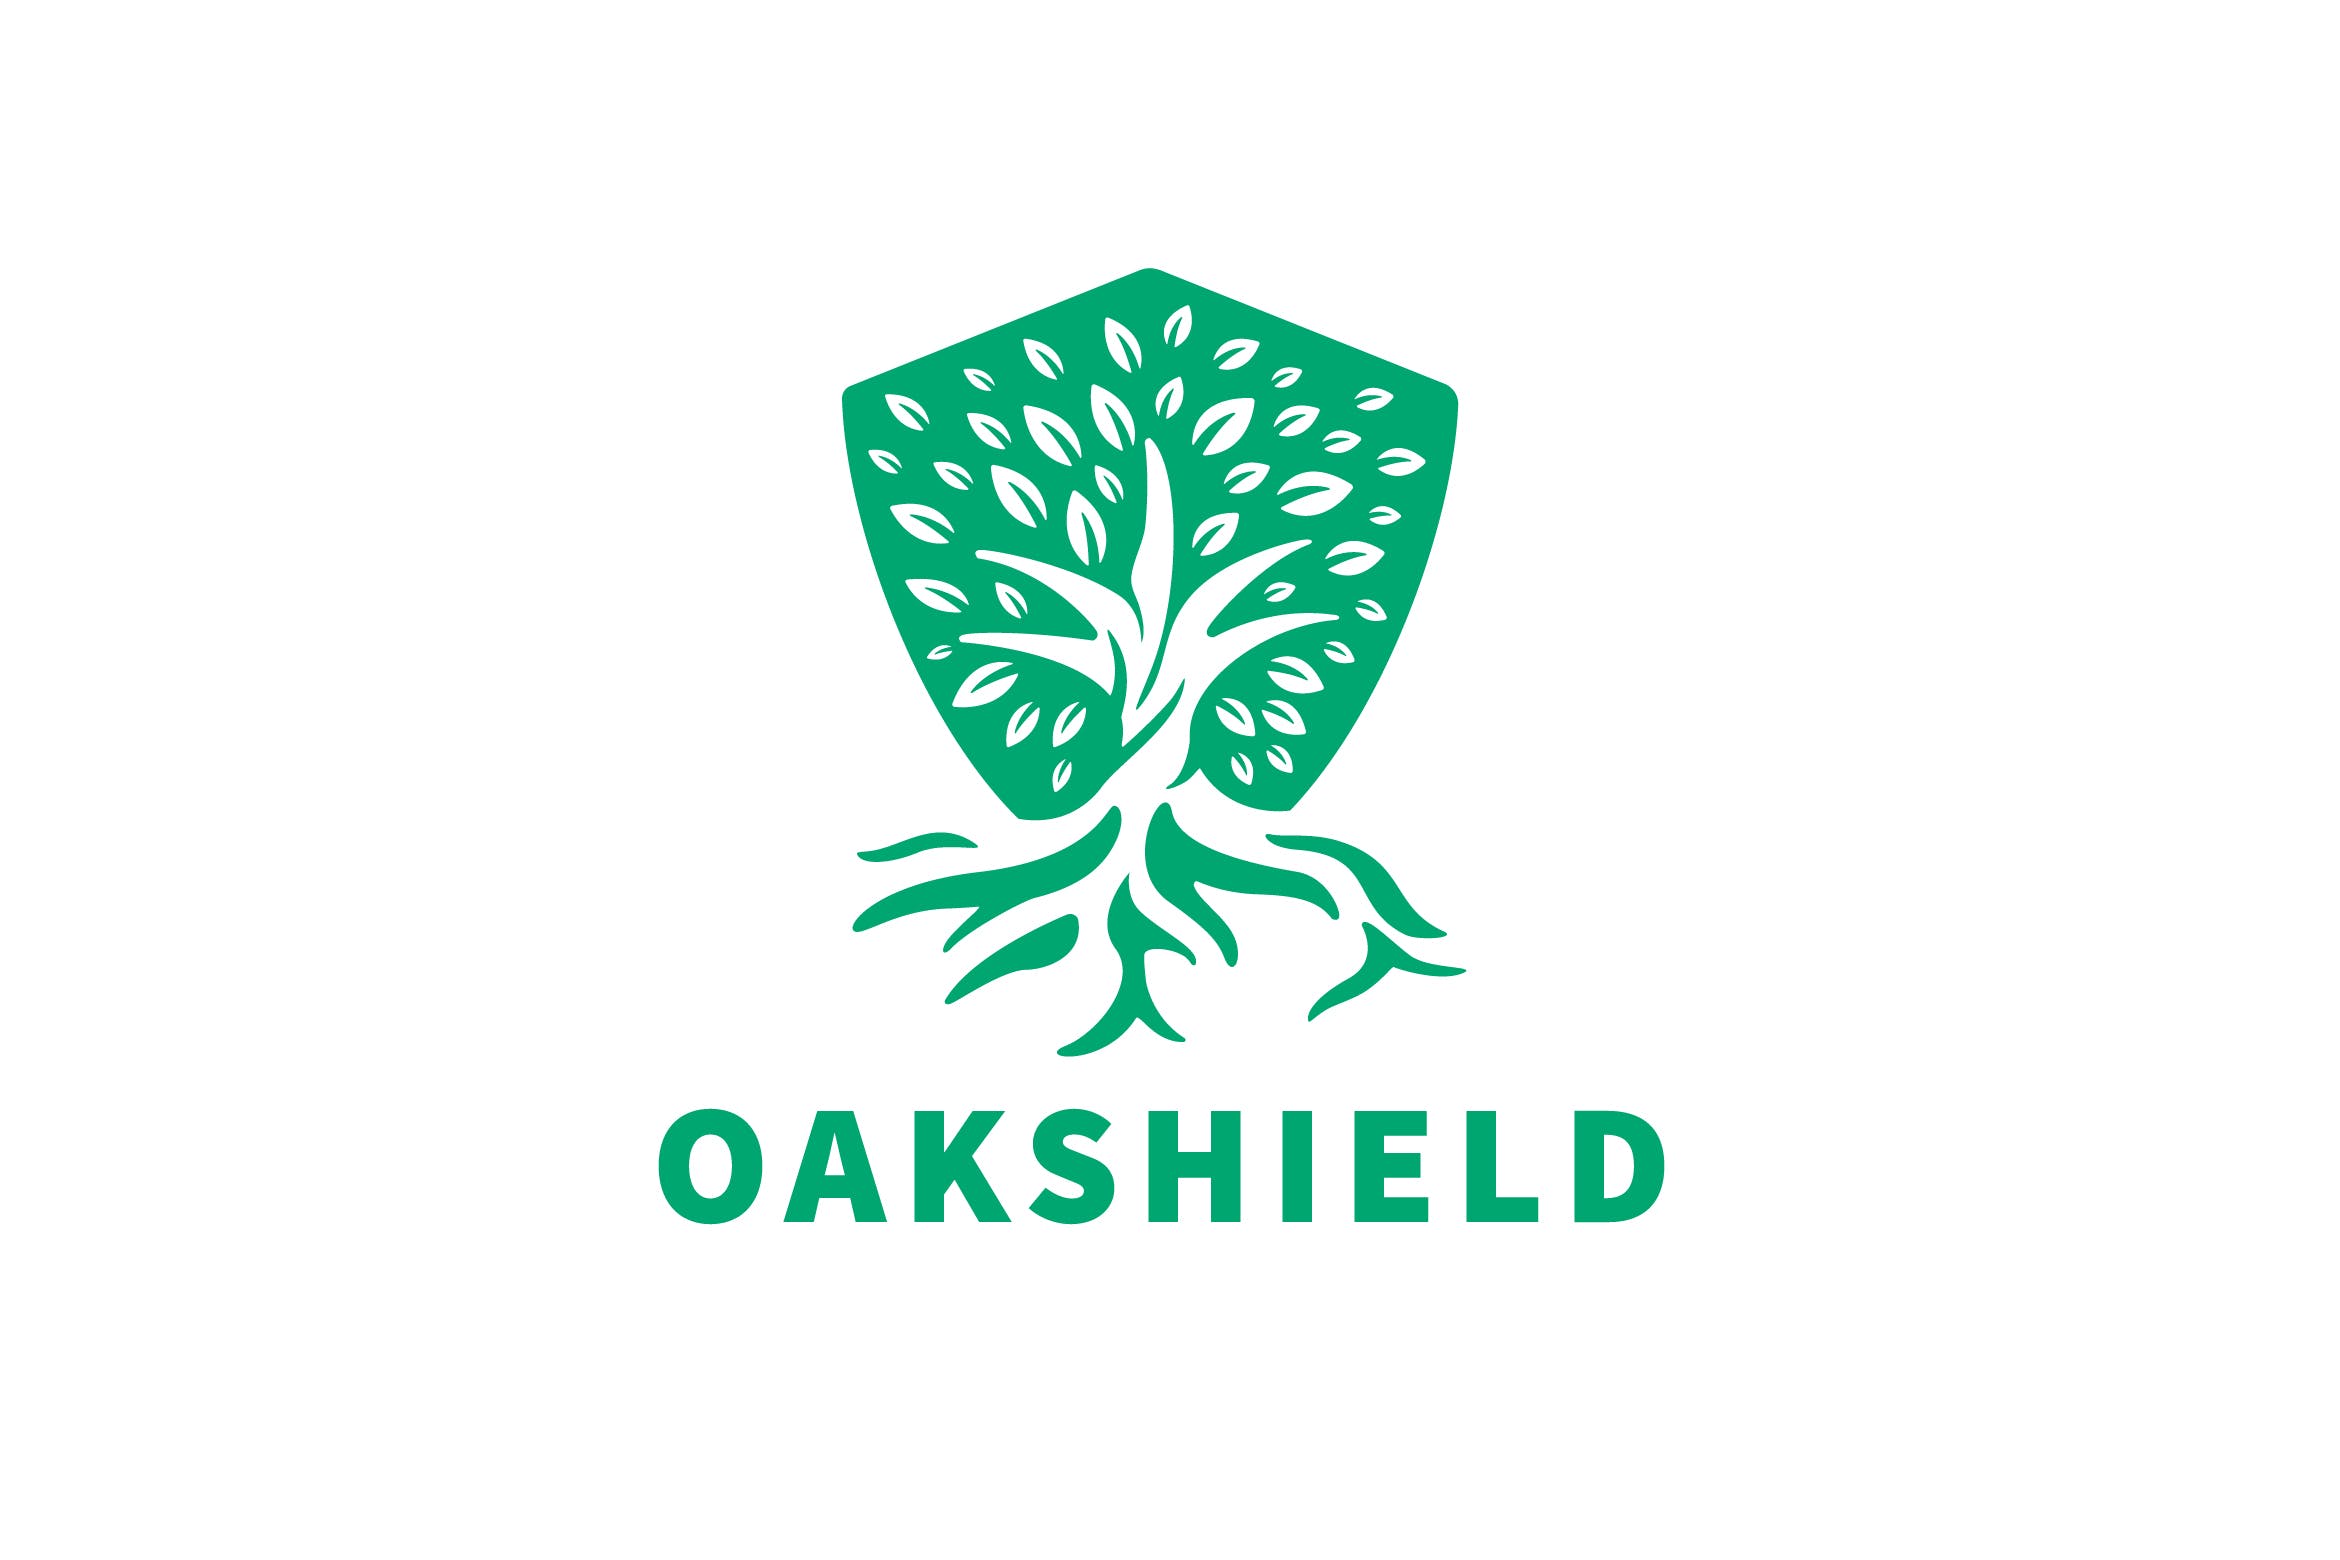 负空间设计风格橡木盾几何图形Logo设计大洋岛精选模板 Oak Shield Negative Space Logo插图